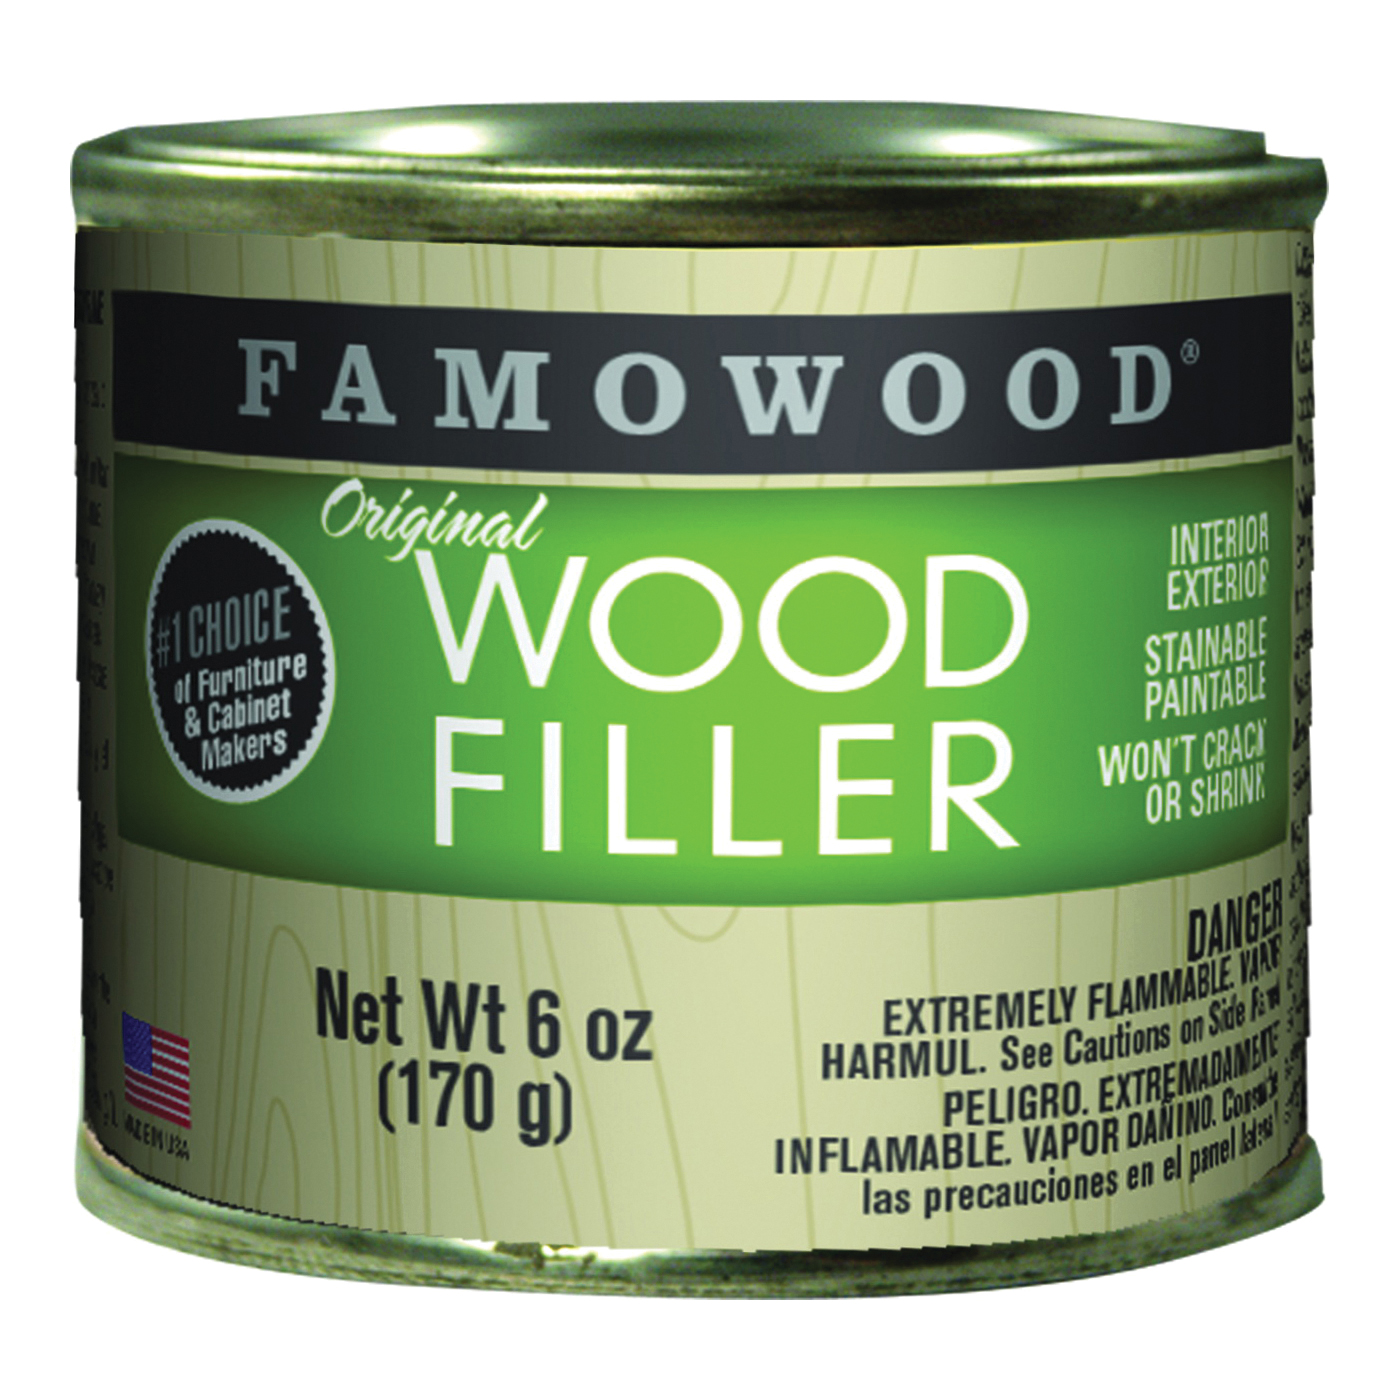 36141144 Original Wood Filler, Liquid, Paste, White, 6 oz, Can